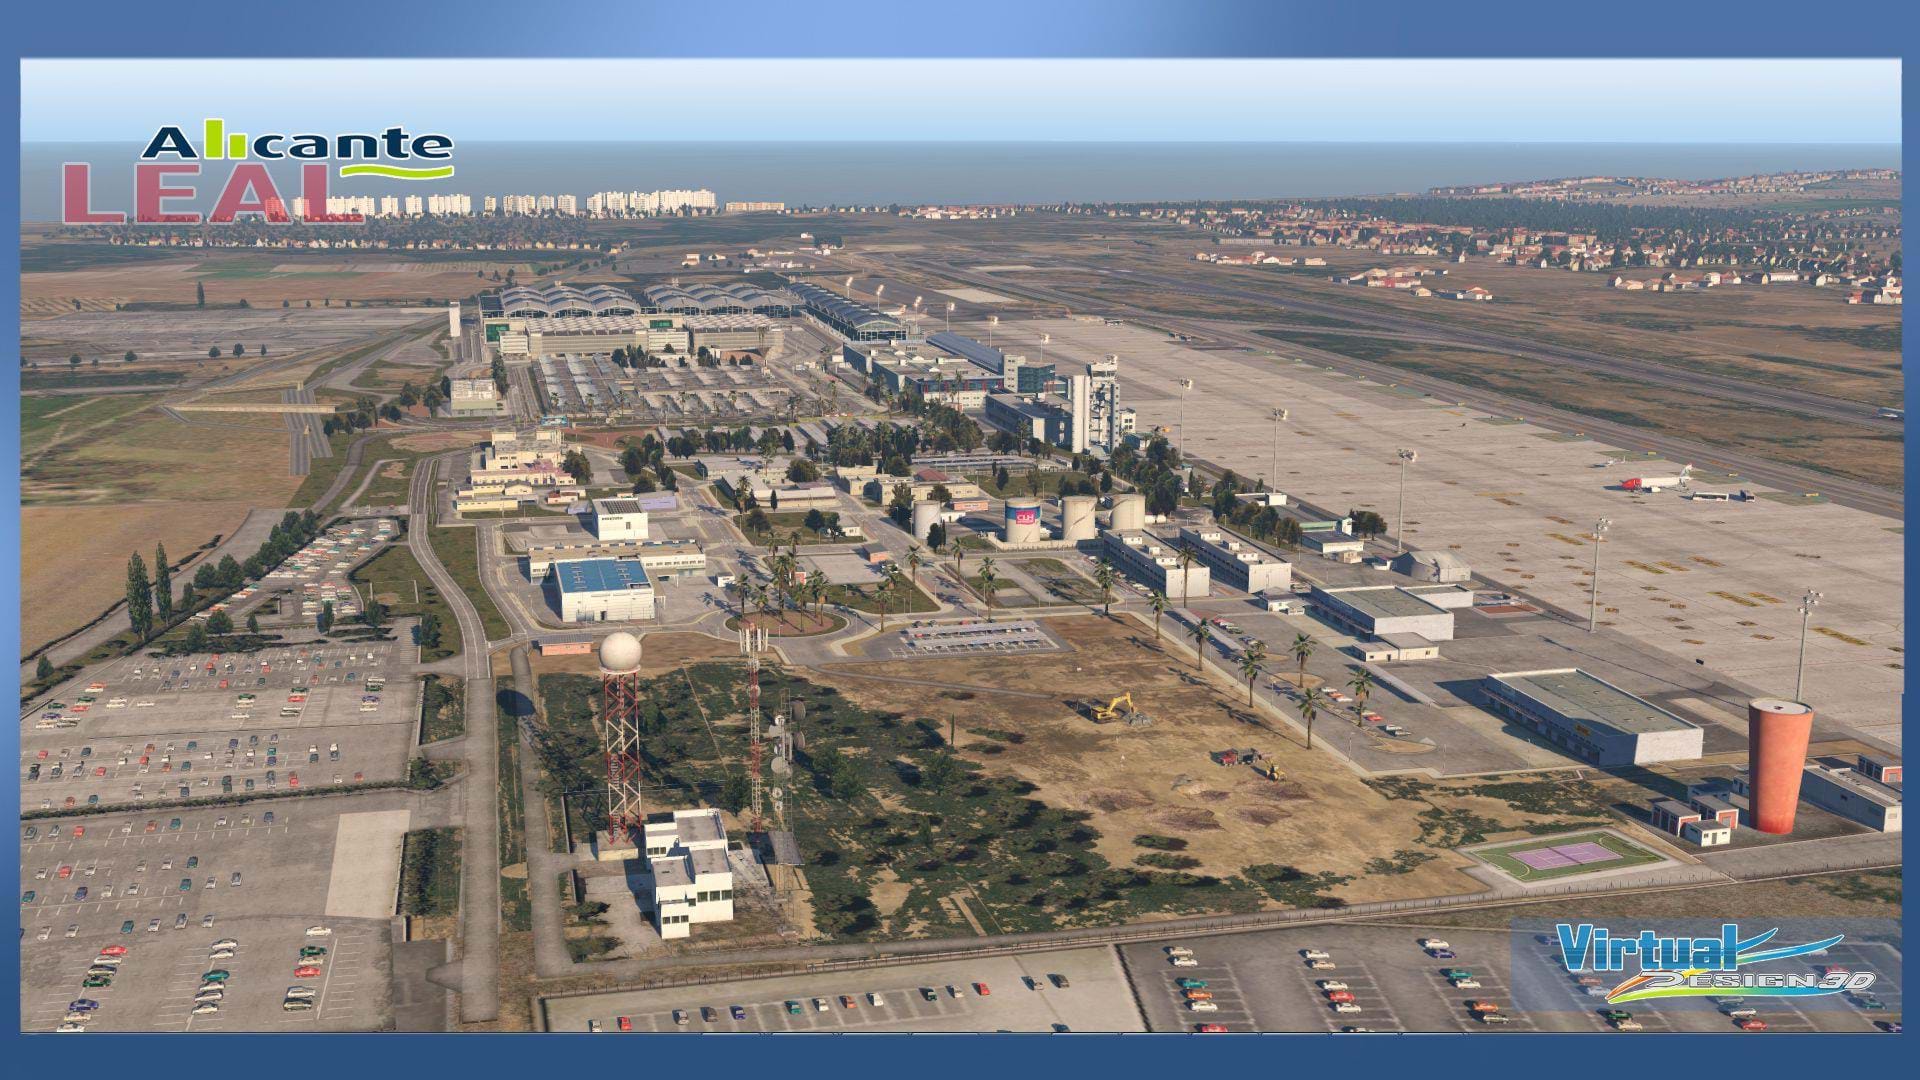 VirtualDesign3D LEAL - Alicante for X-Plane